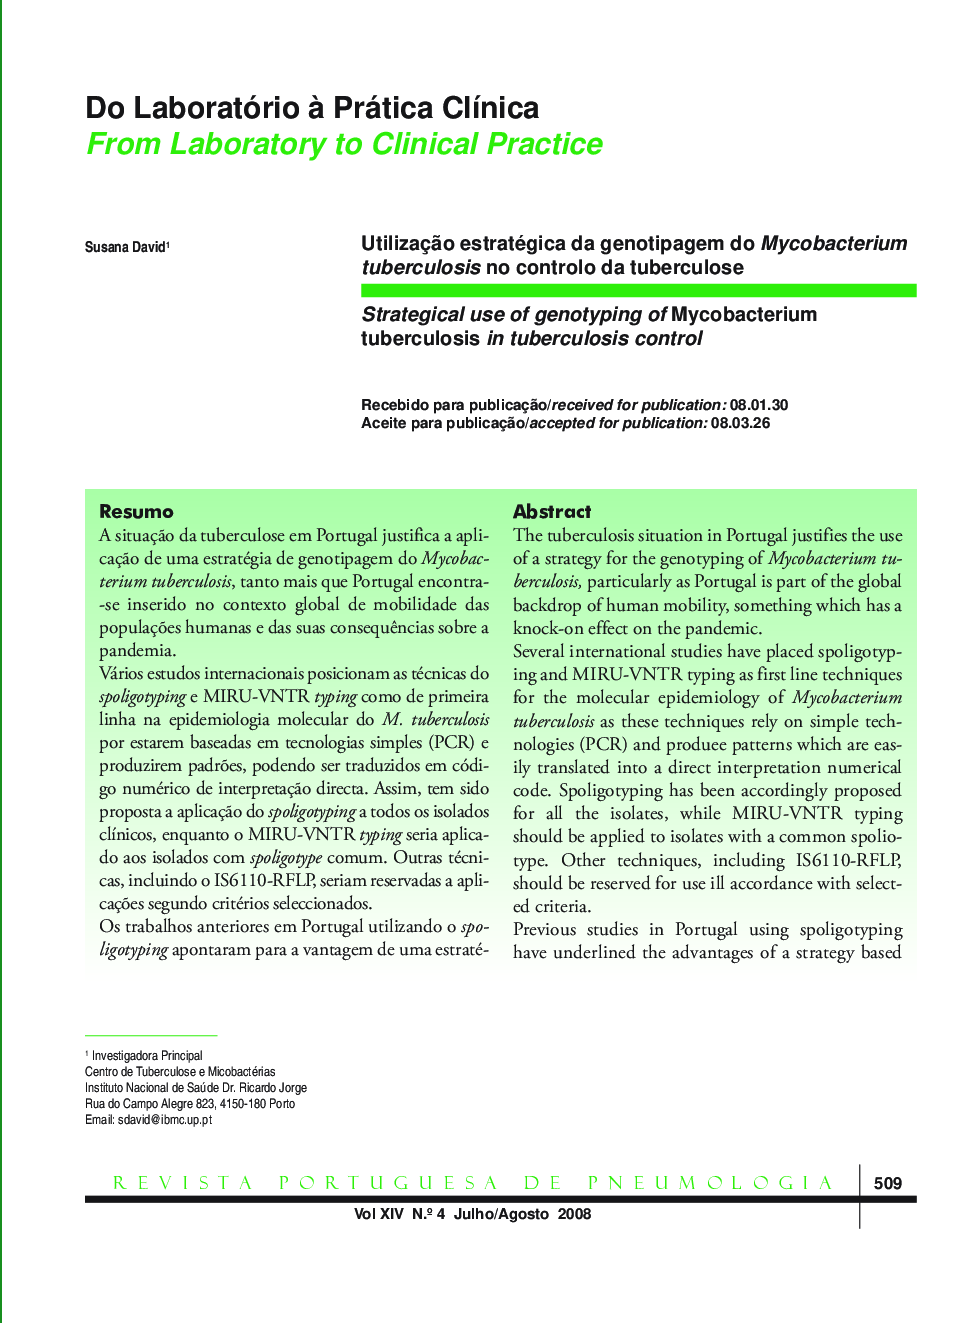 Utilização estratégica da genotipagem do Mycobacterium tuberculosis no controlo da tuberculose